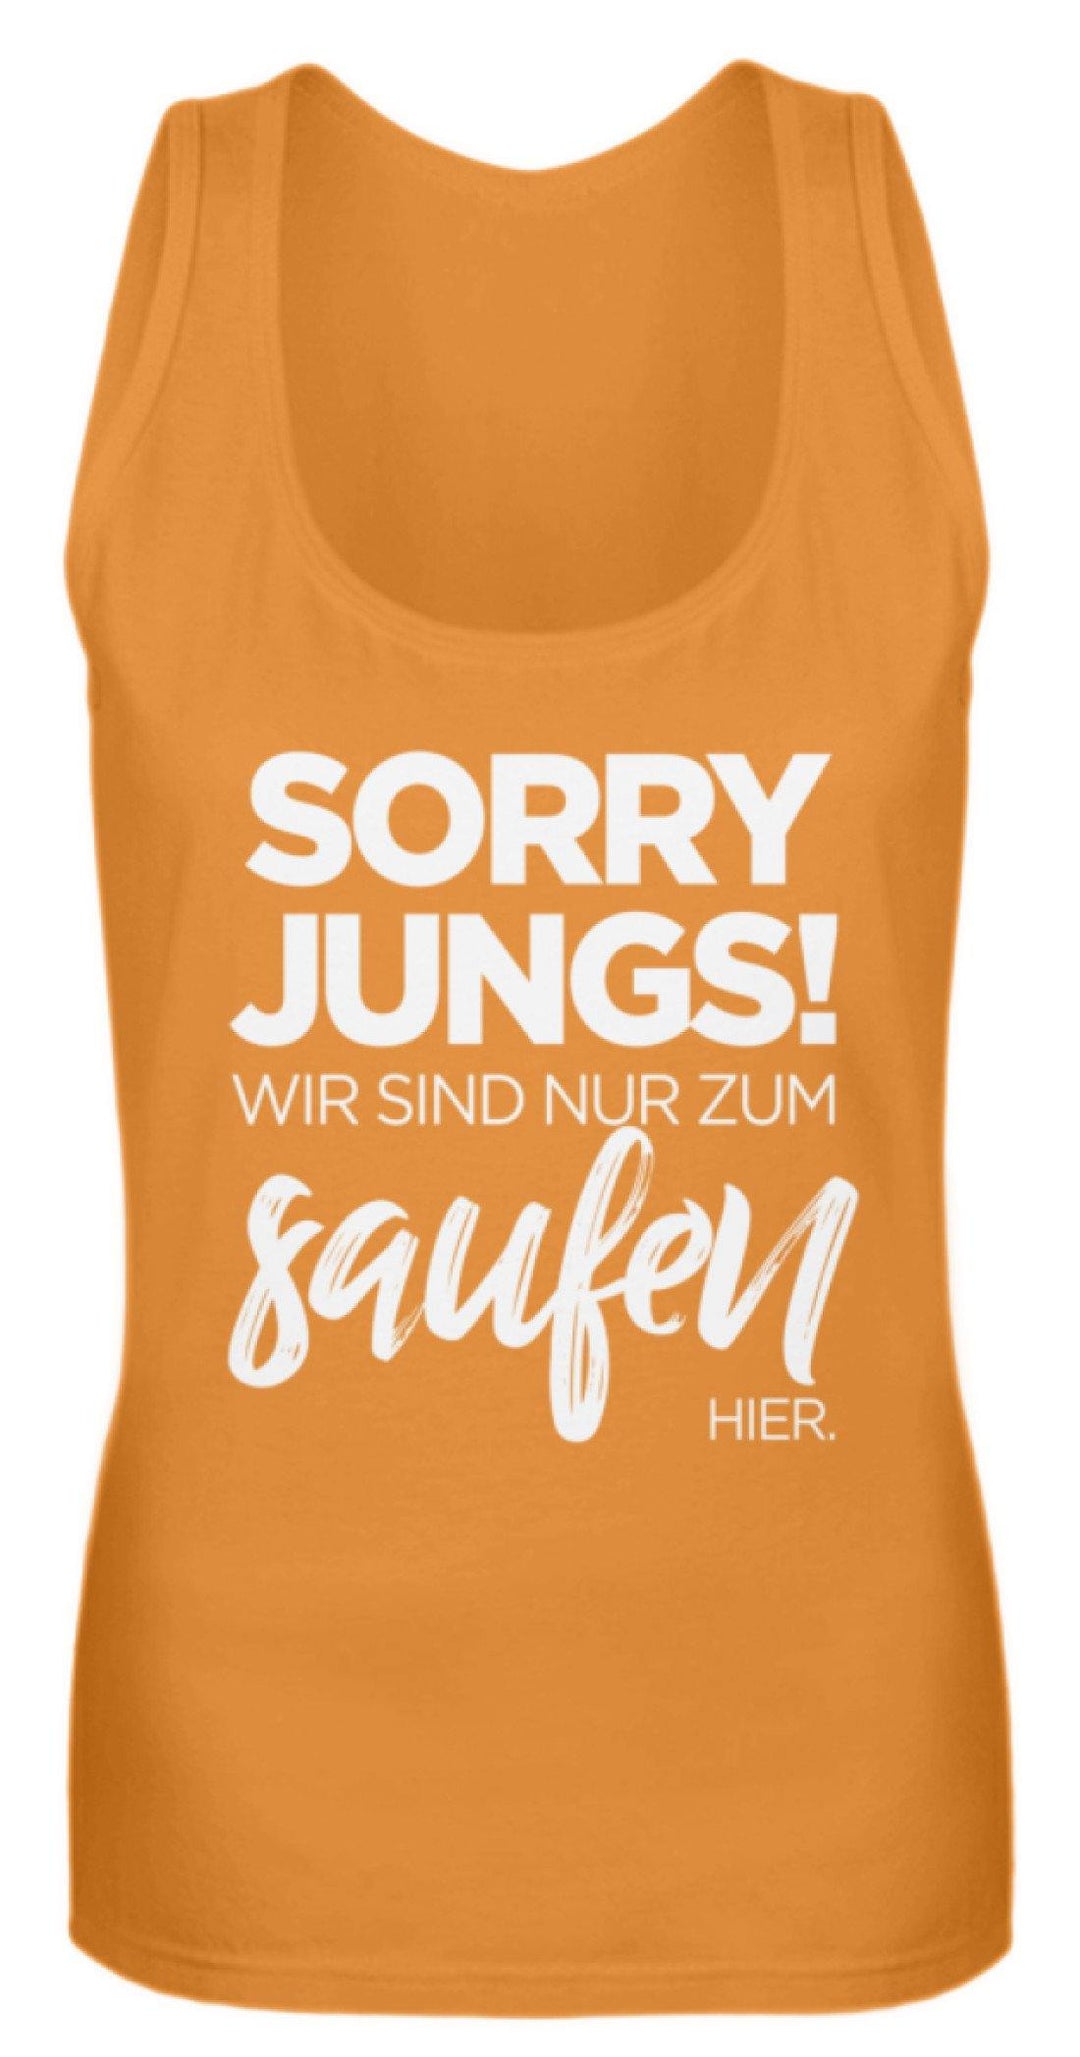 Sorry Jungs! Nur zum saufen hier.  - Frauen Tanktop - Words on Shirts